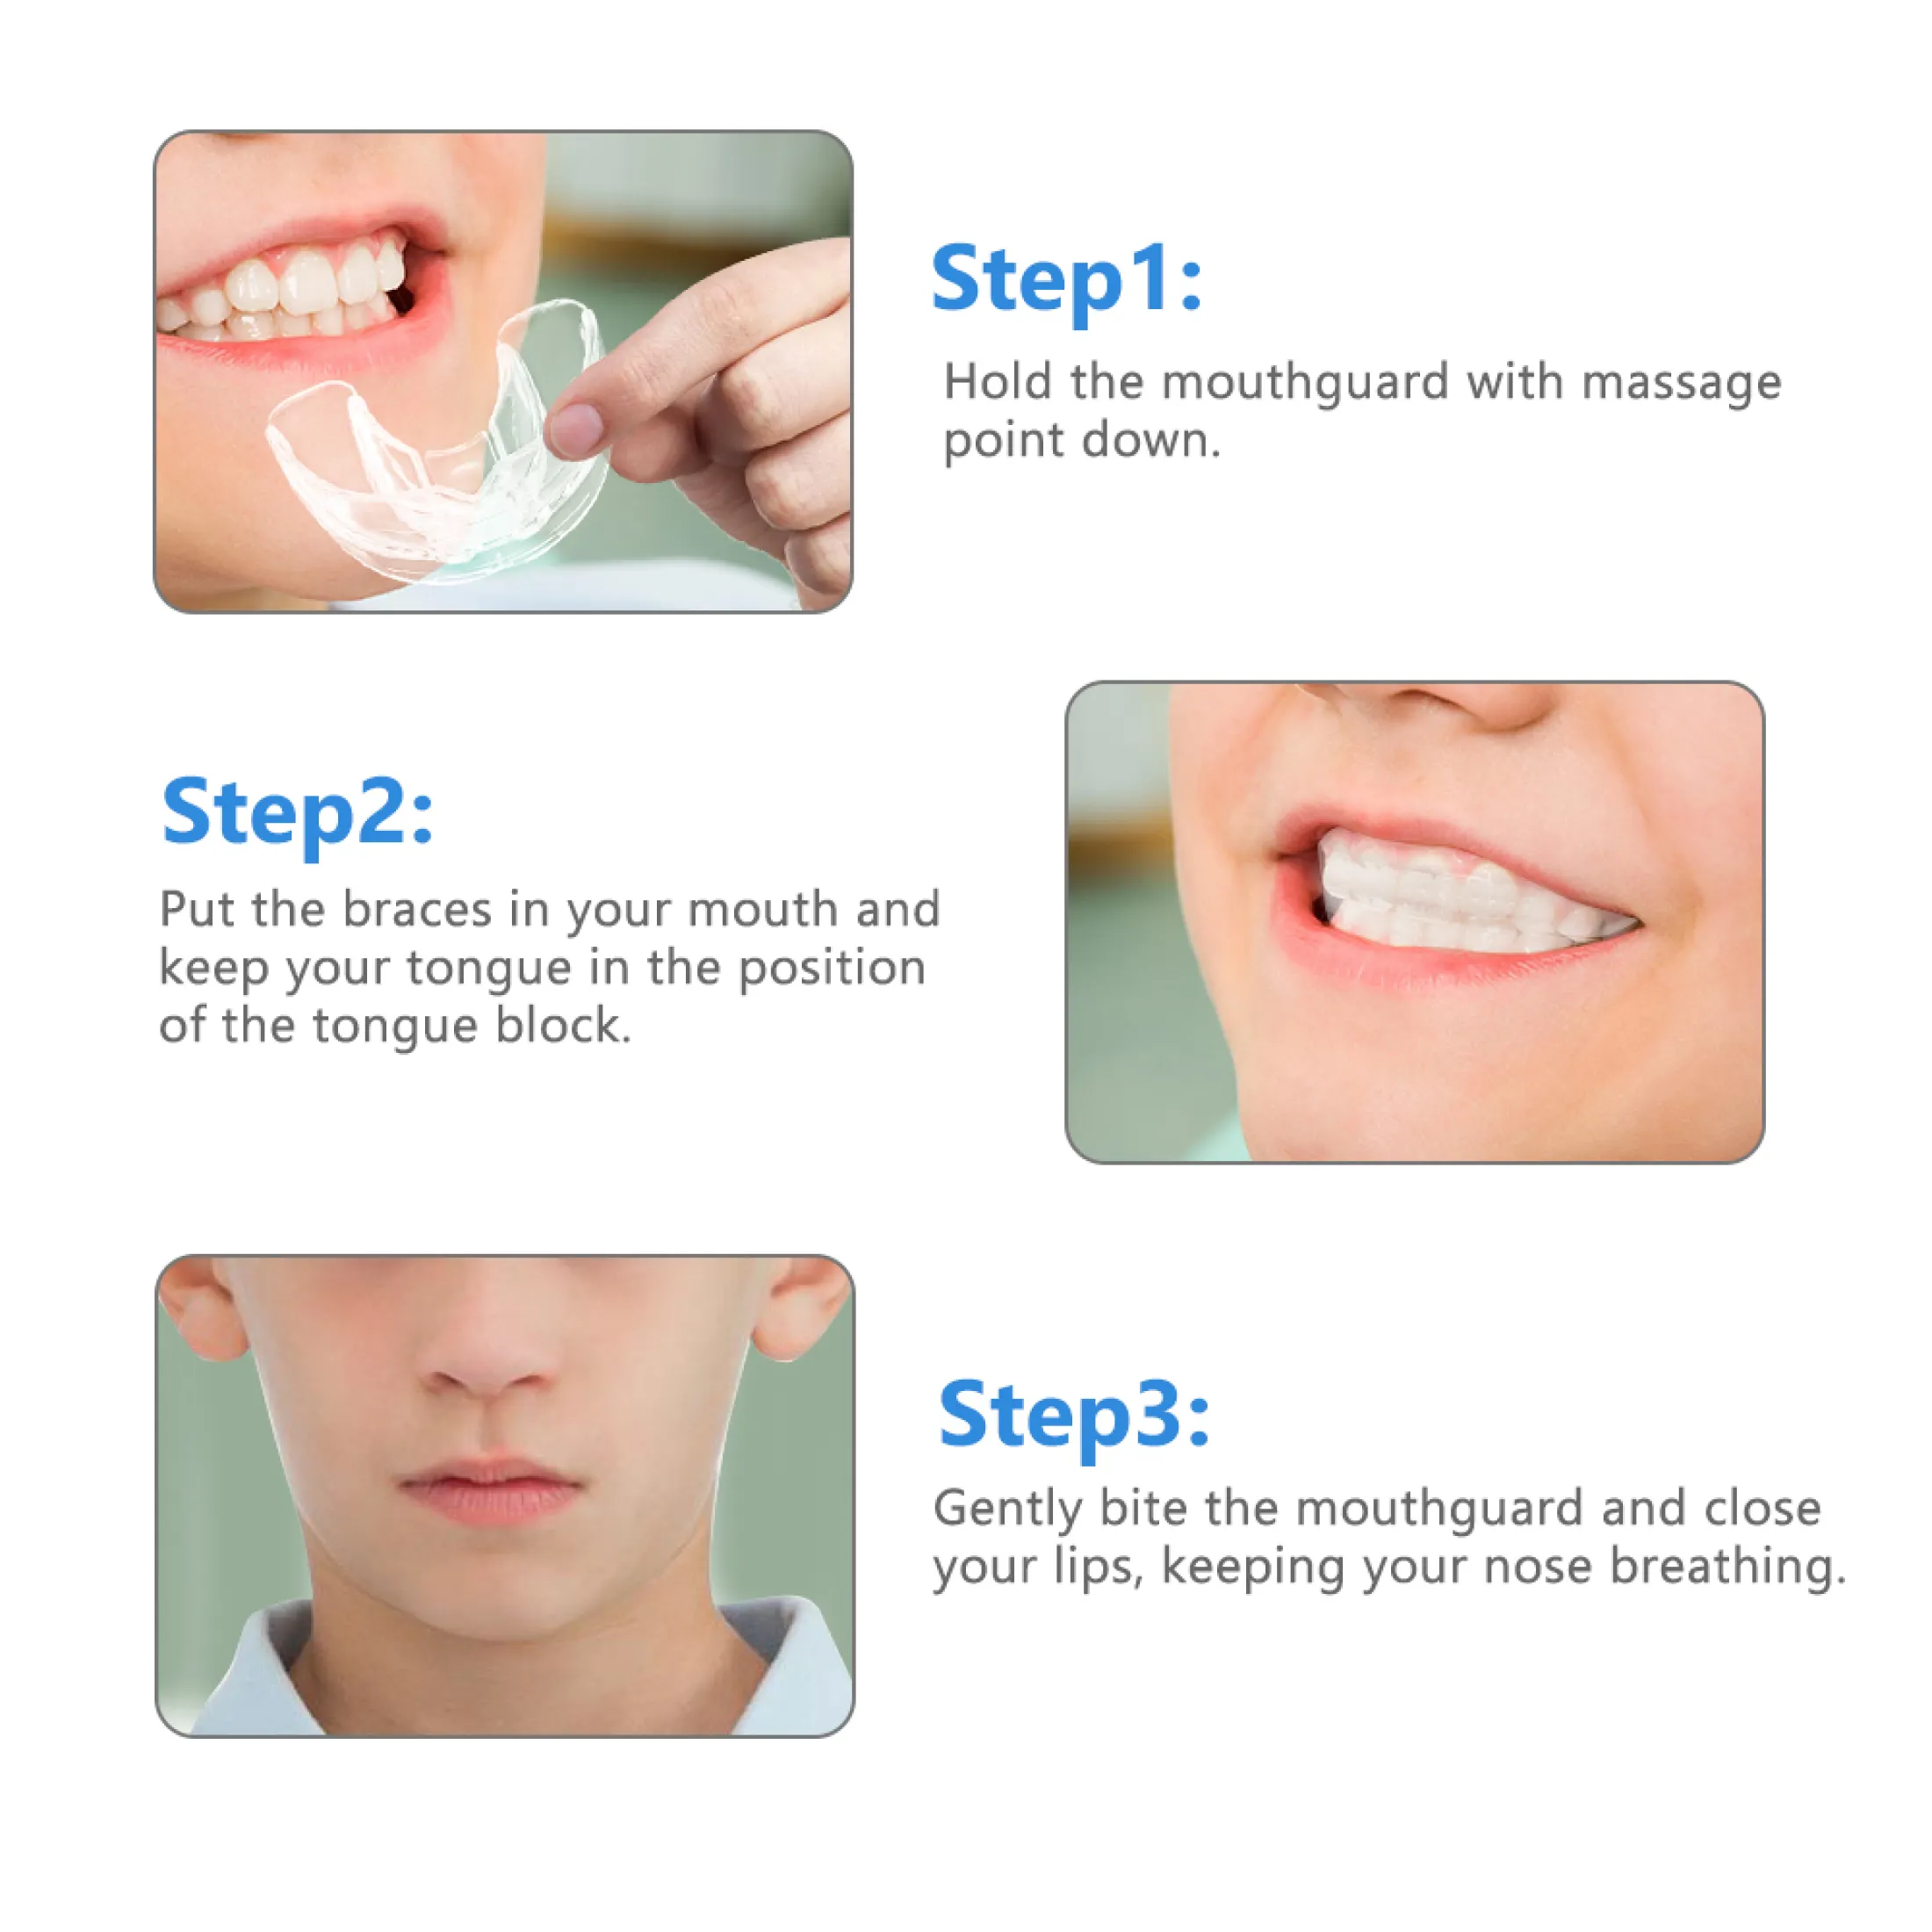 hailicare bộ niềng răng chỉnh nha nha khoa dụng cụ chỉnh răng bằng silicon 3 giai đoạn dụng cụ giữ răng dụng cụ giữ răng dụng cụ chỉnh răng dụng cụ duỗi răng cho trẻ em 6